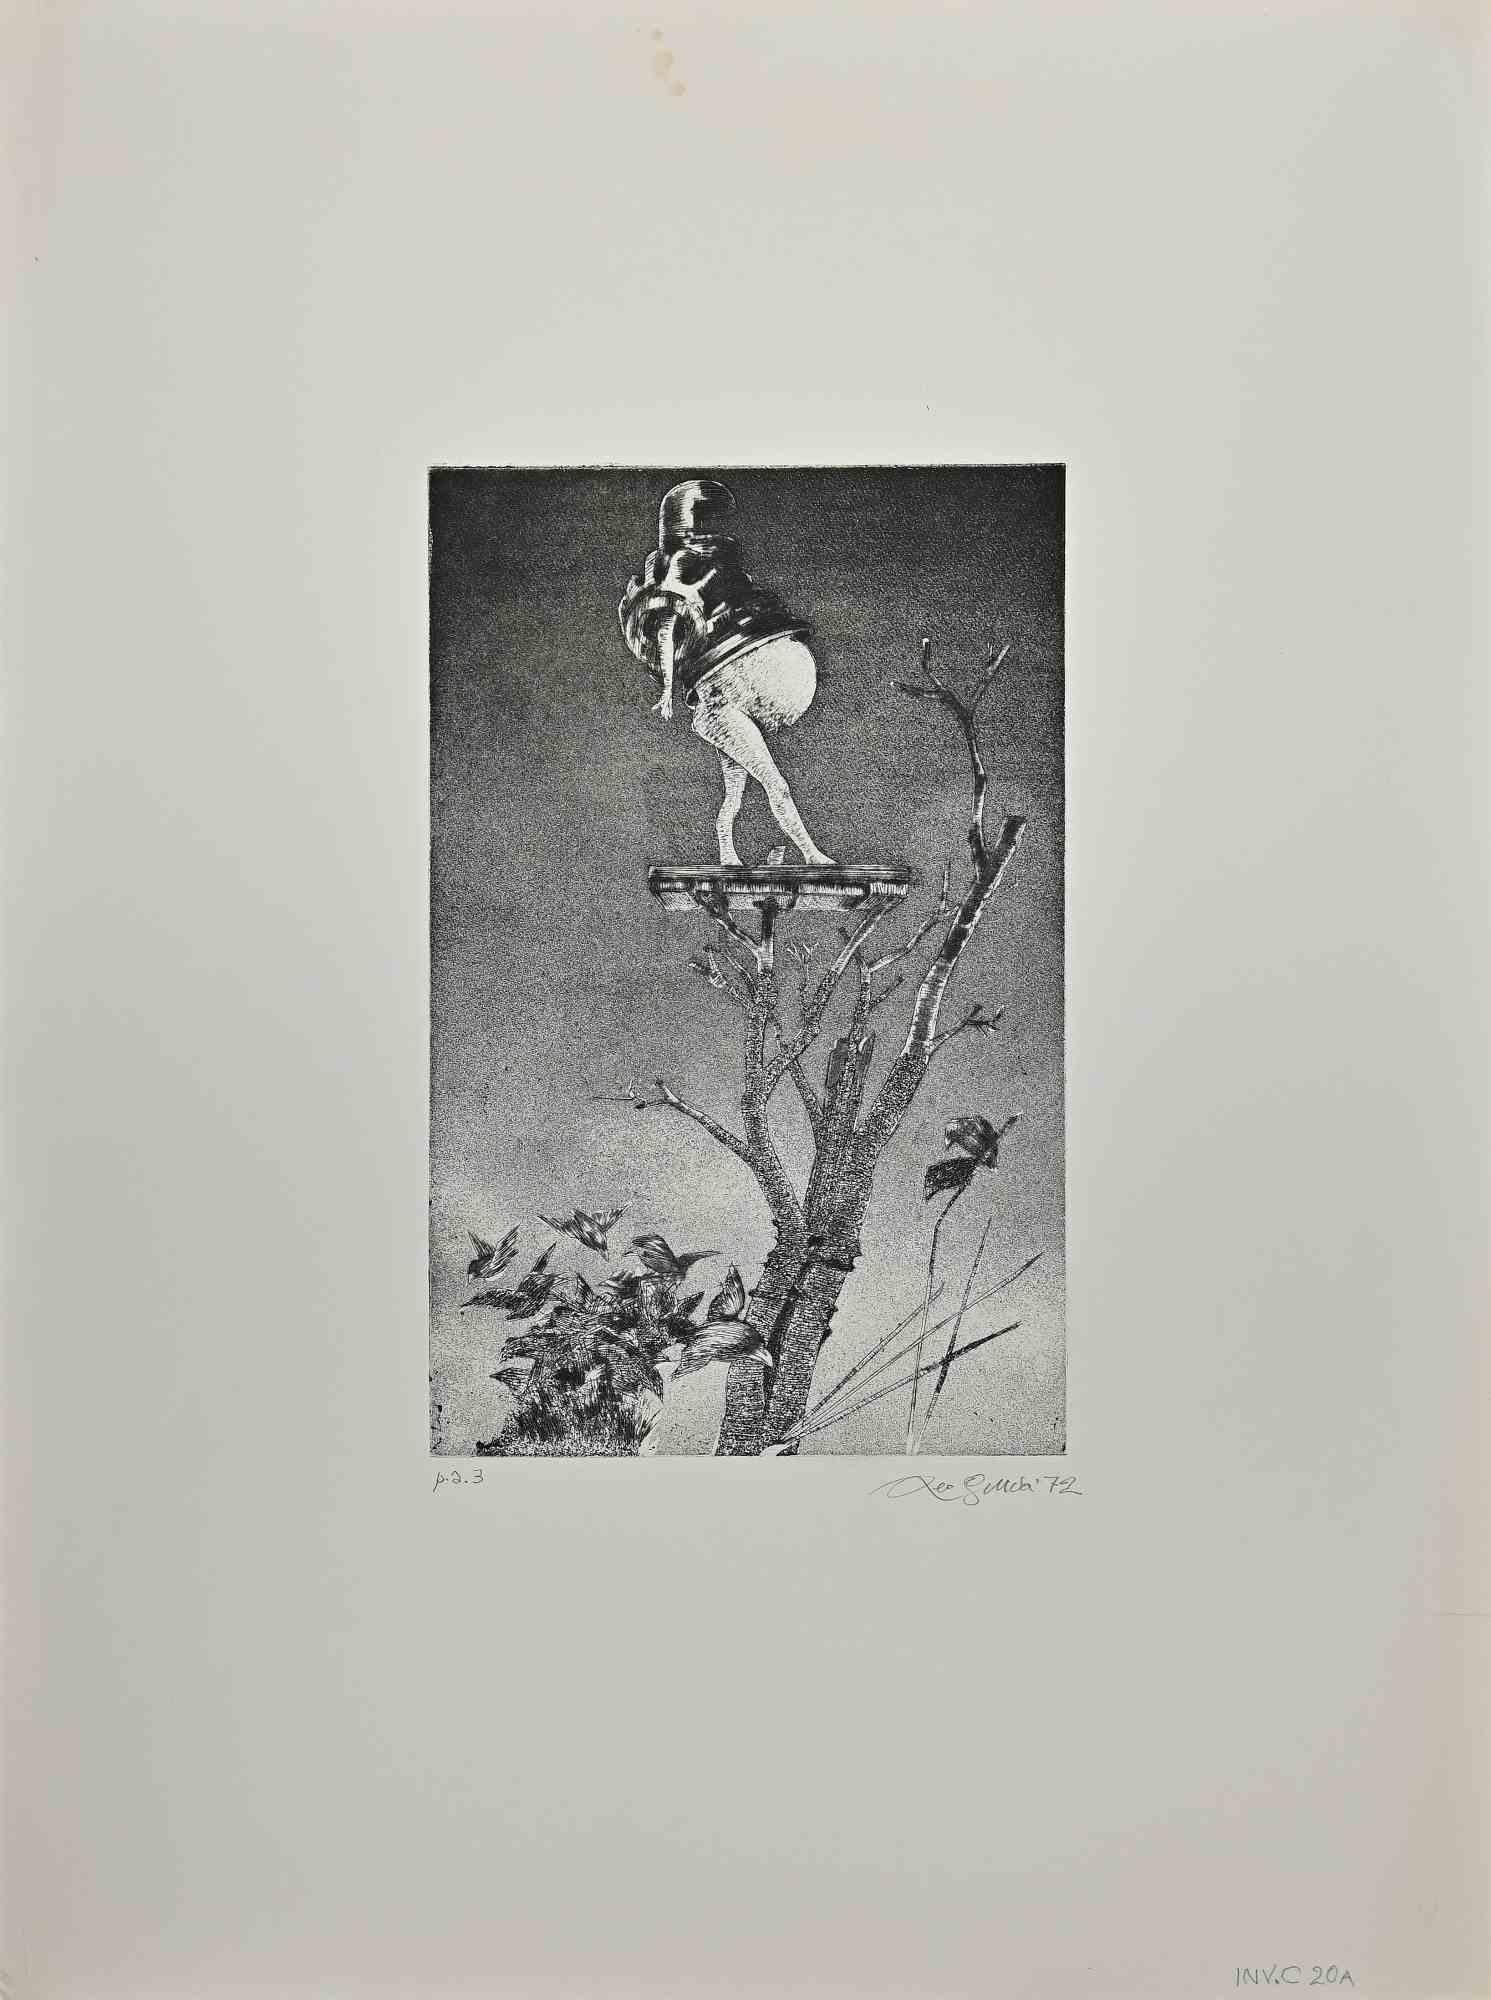 Mann auf einem Baum ist eine Radierung von Leo Guida aus dem Jahr 1972. 

Handsigniert und datiert am linken unteren Rand, Leo Guida 72' , Inv. C20 A.

64X48 cm.

Gute Bedingungen.

 

Leo Guida war sensibel für aktuelle Themen, künstlerische